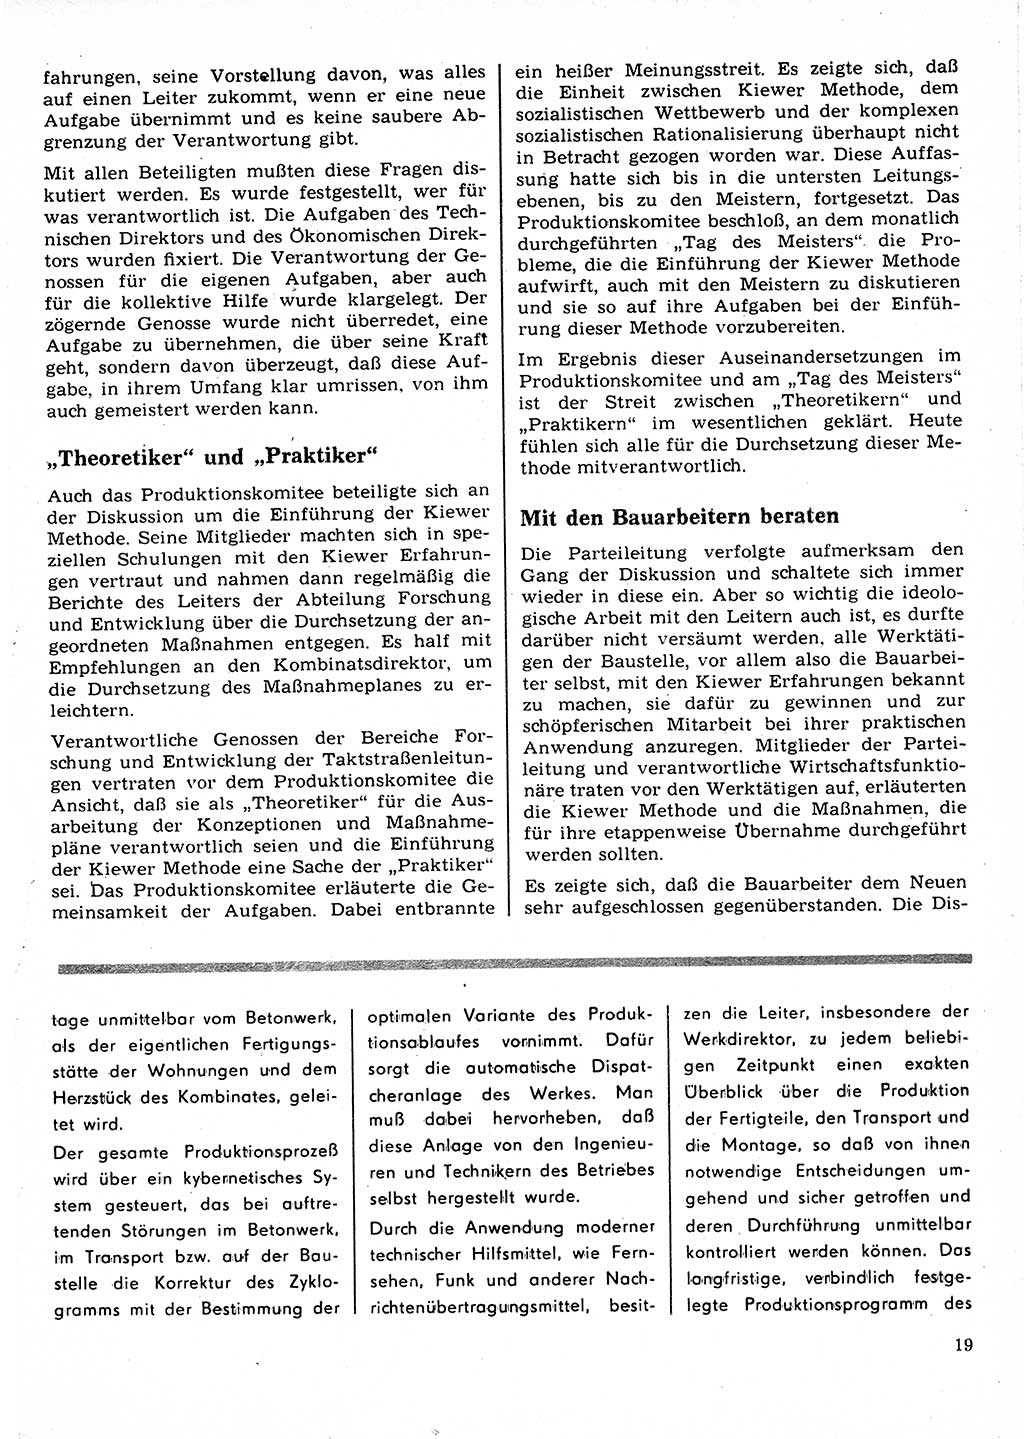 Neuer Weg (NW), Organ des Zentralkomitees (ZK) der SED (Sozialistische Einheitspartei Deutschlands) für Fragen des Parteilebens, 22. Jahrgang [Deutsche Demokratische Republik (DDR)] 1967, Seite 19 (NW ZK SED DDR 1967, S. 19)